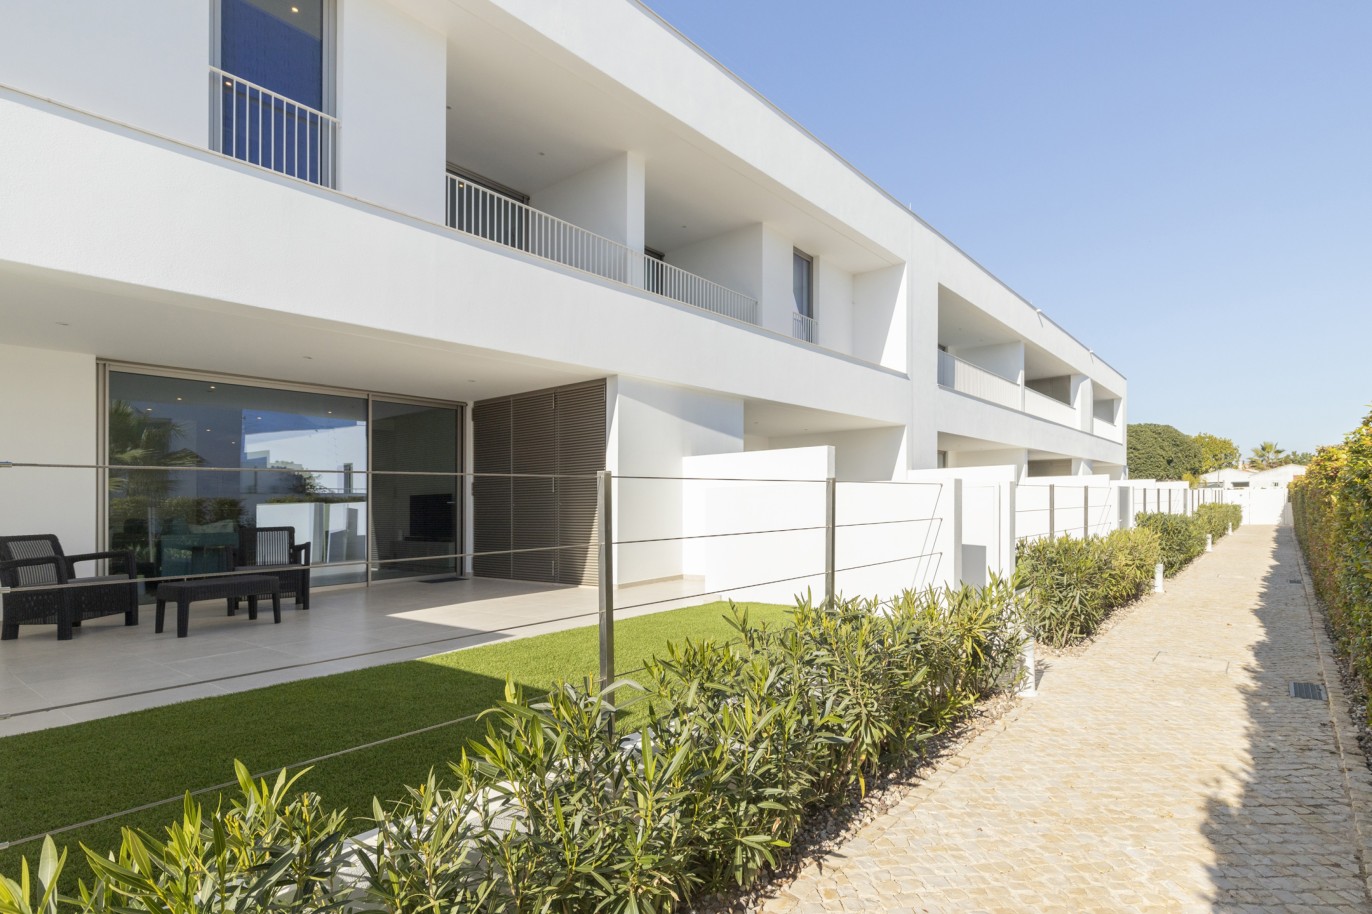 Villa de 3 dormitorios en condominio privado, en venta, en Lagos, Algarve_217640